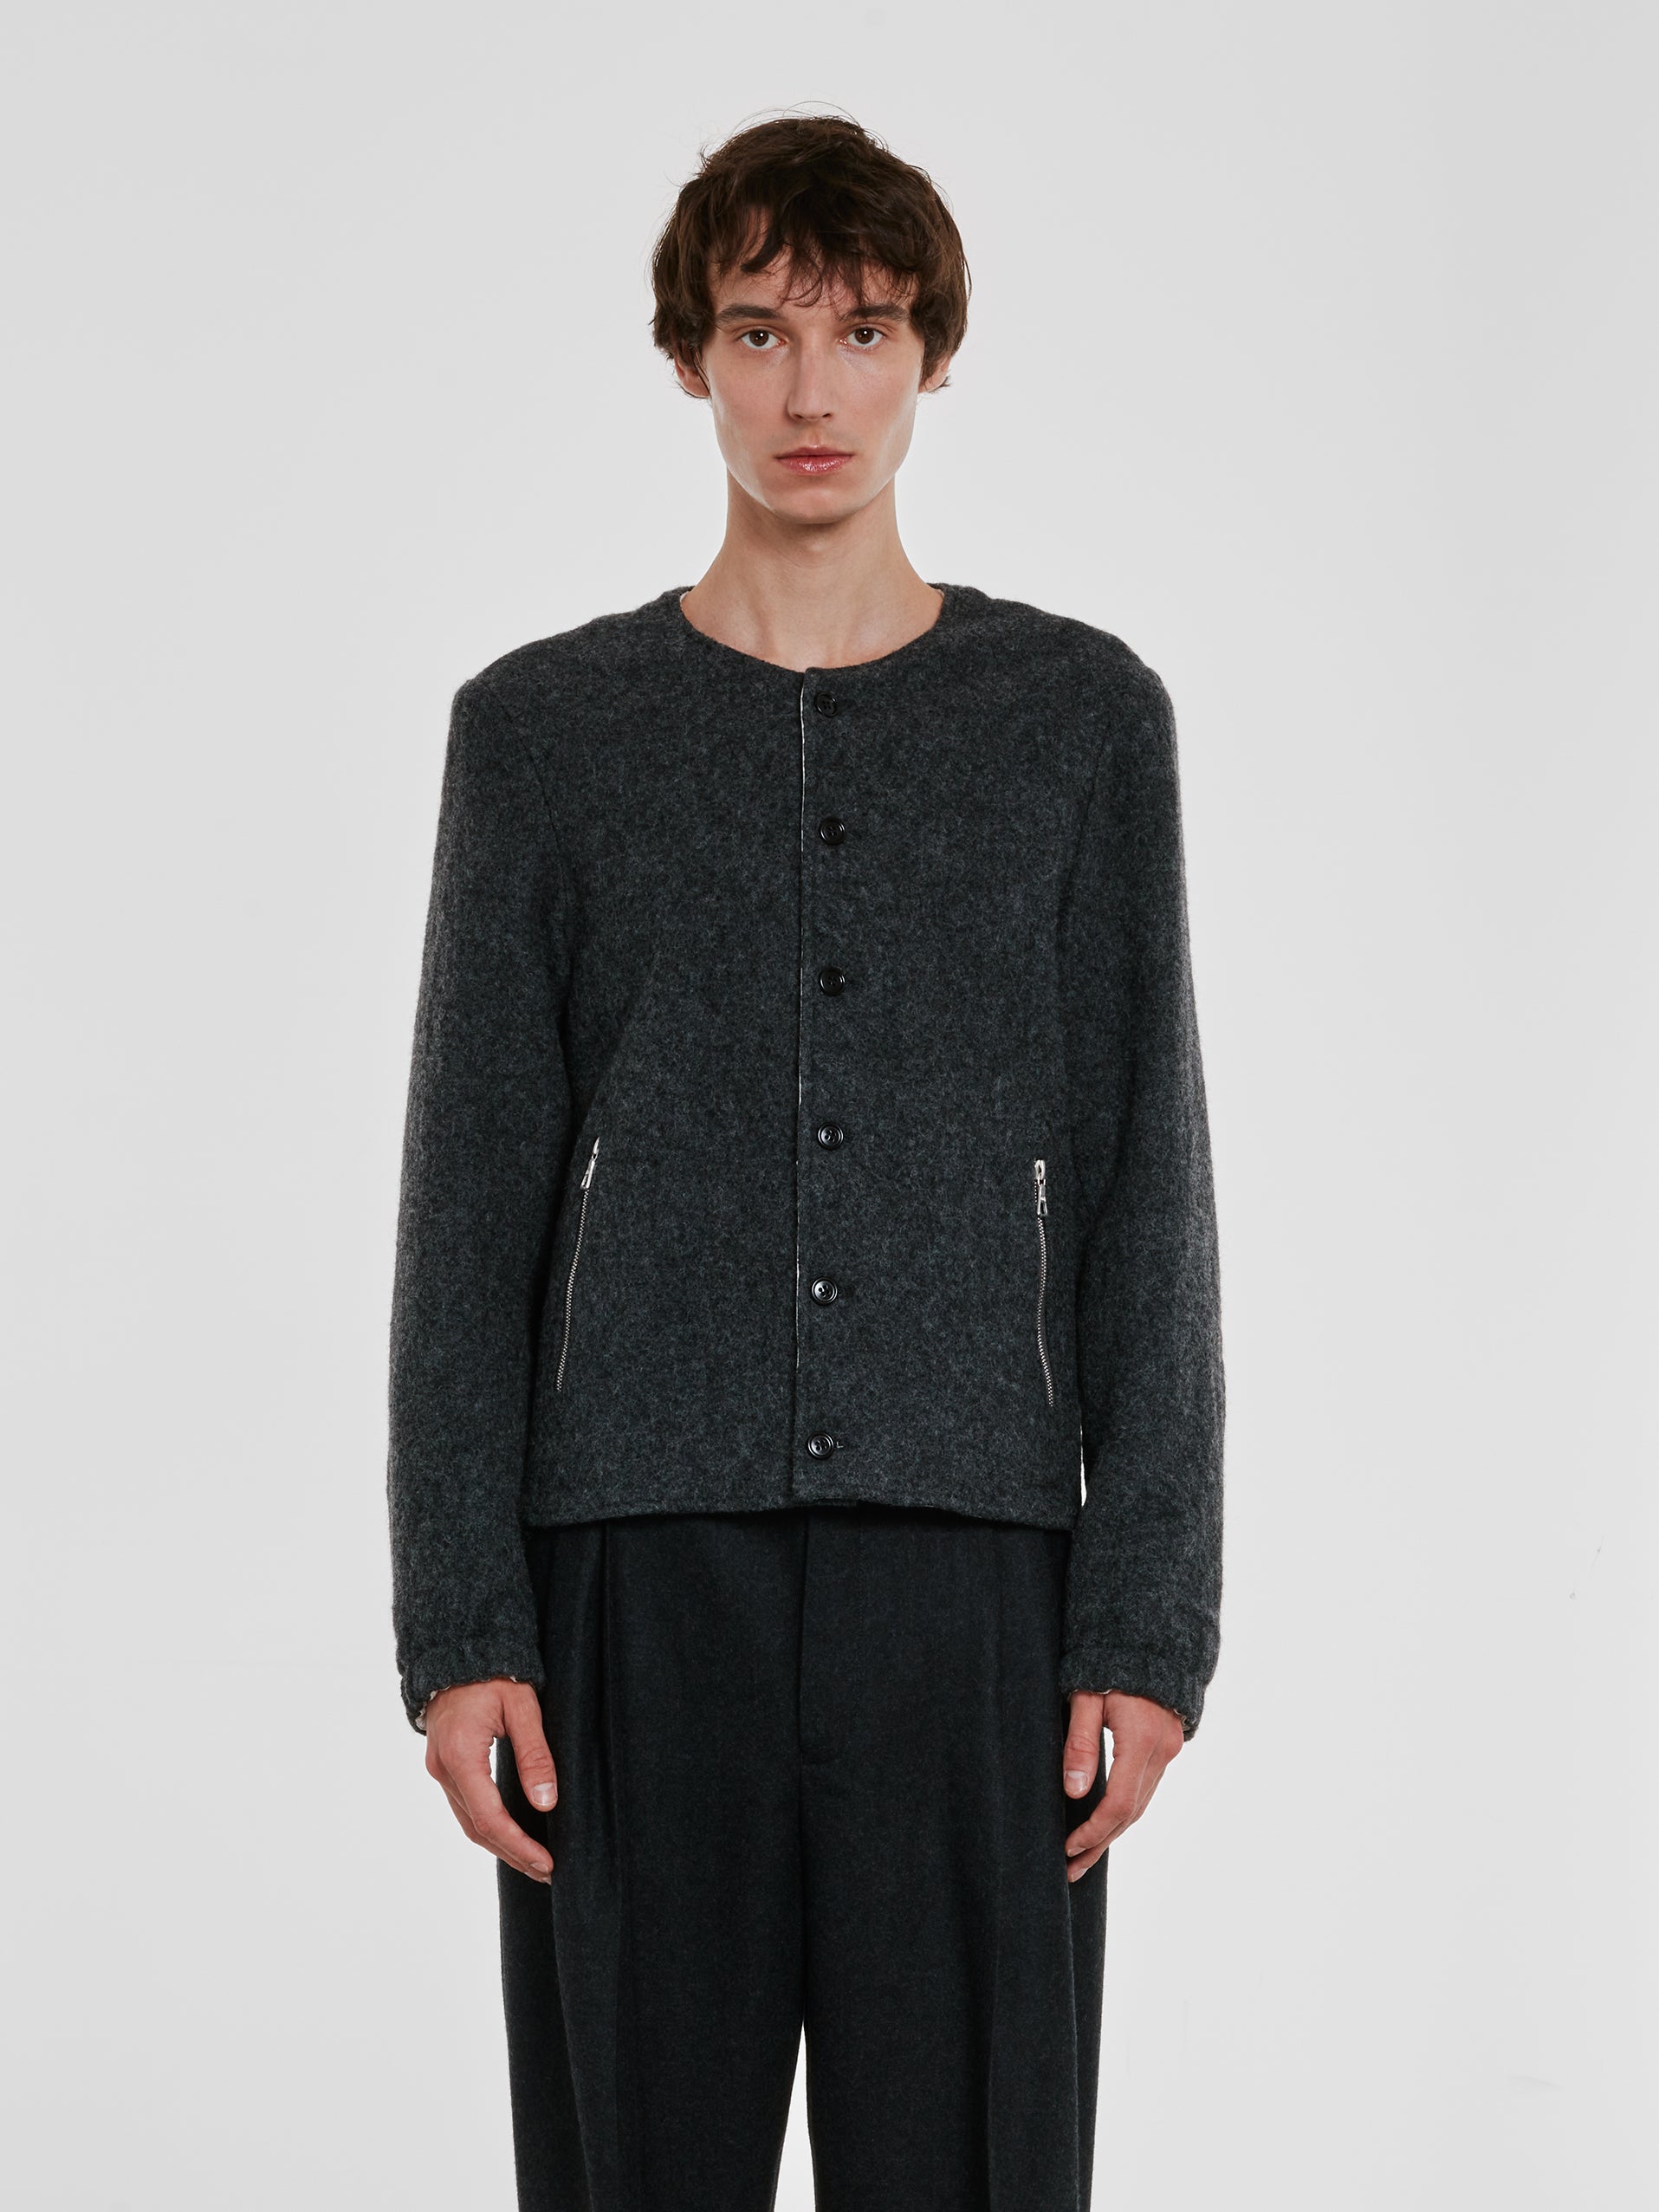 Dries Van Noten - Men’s Collarless Wool Jacket - (Grey) view 2